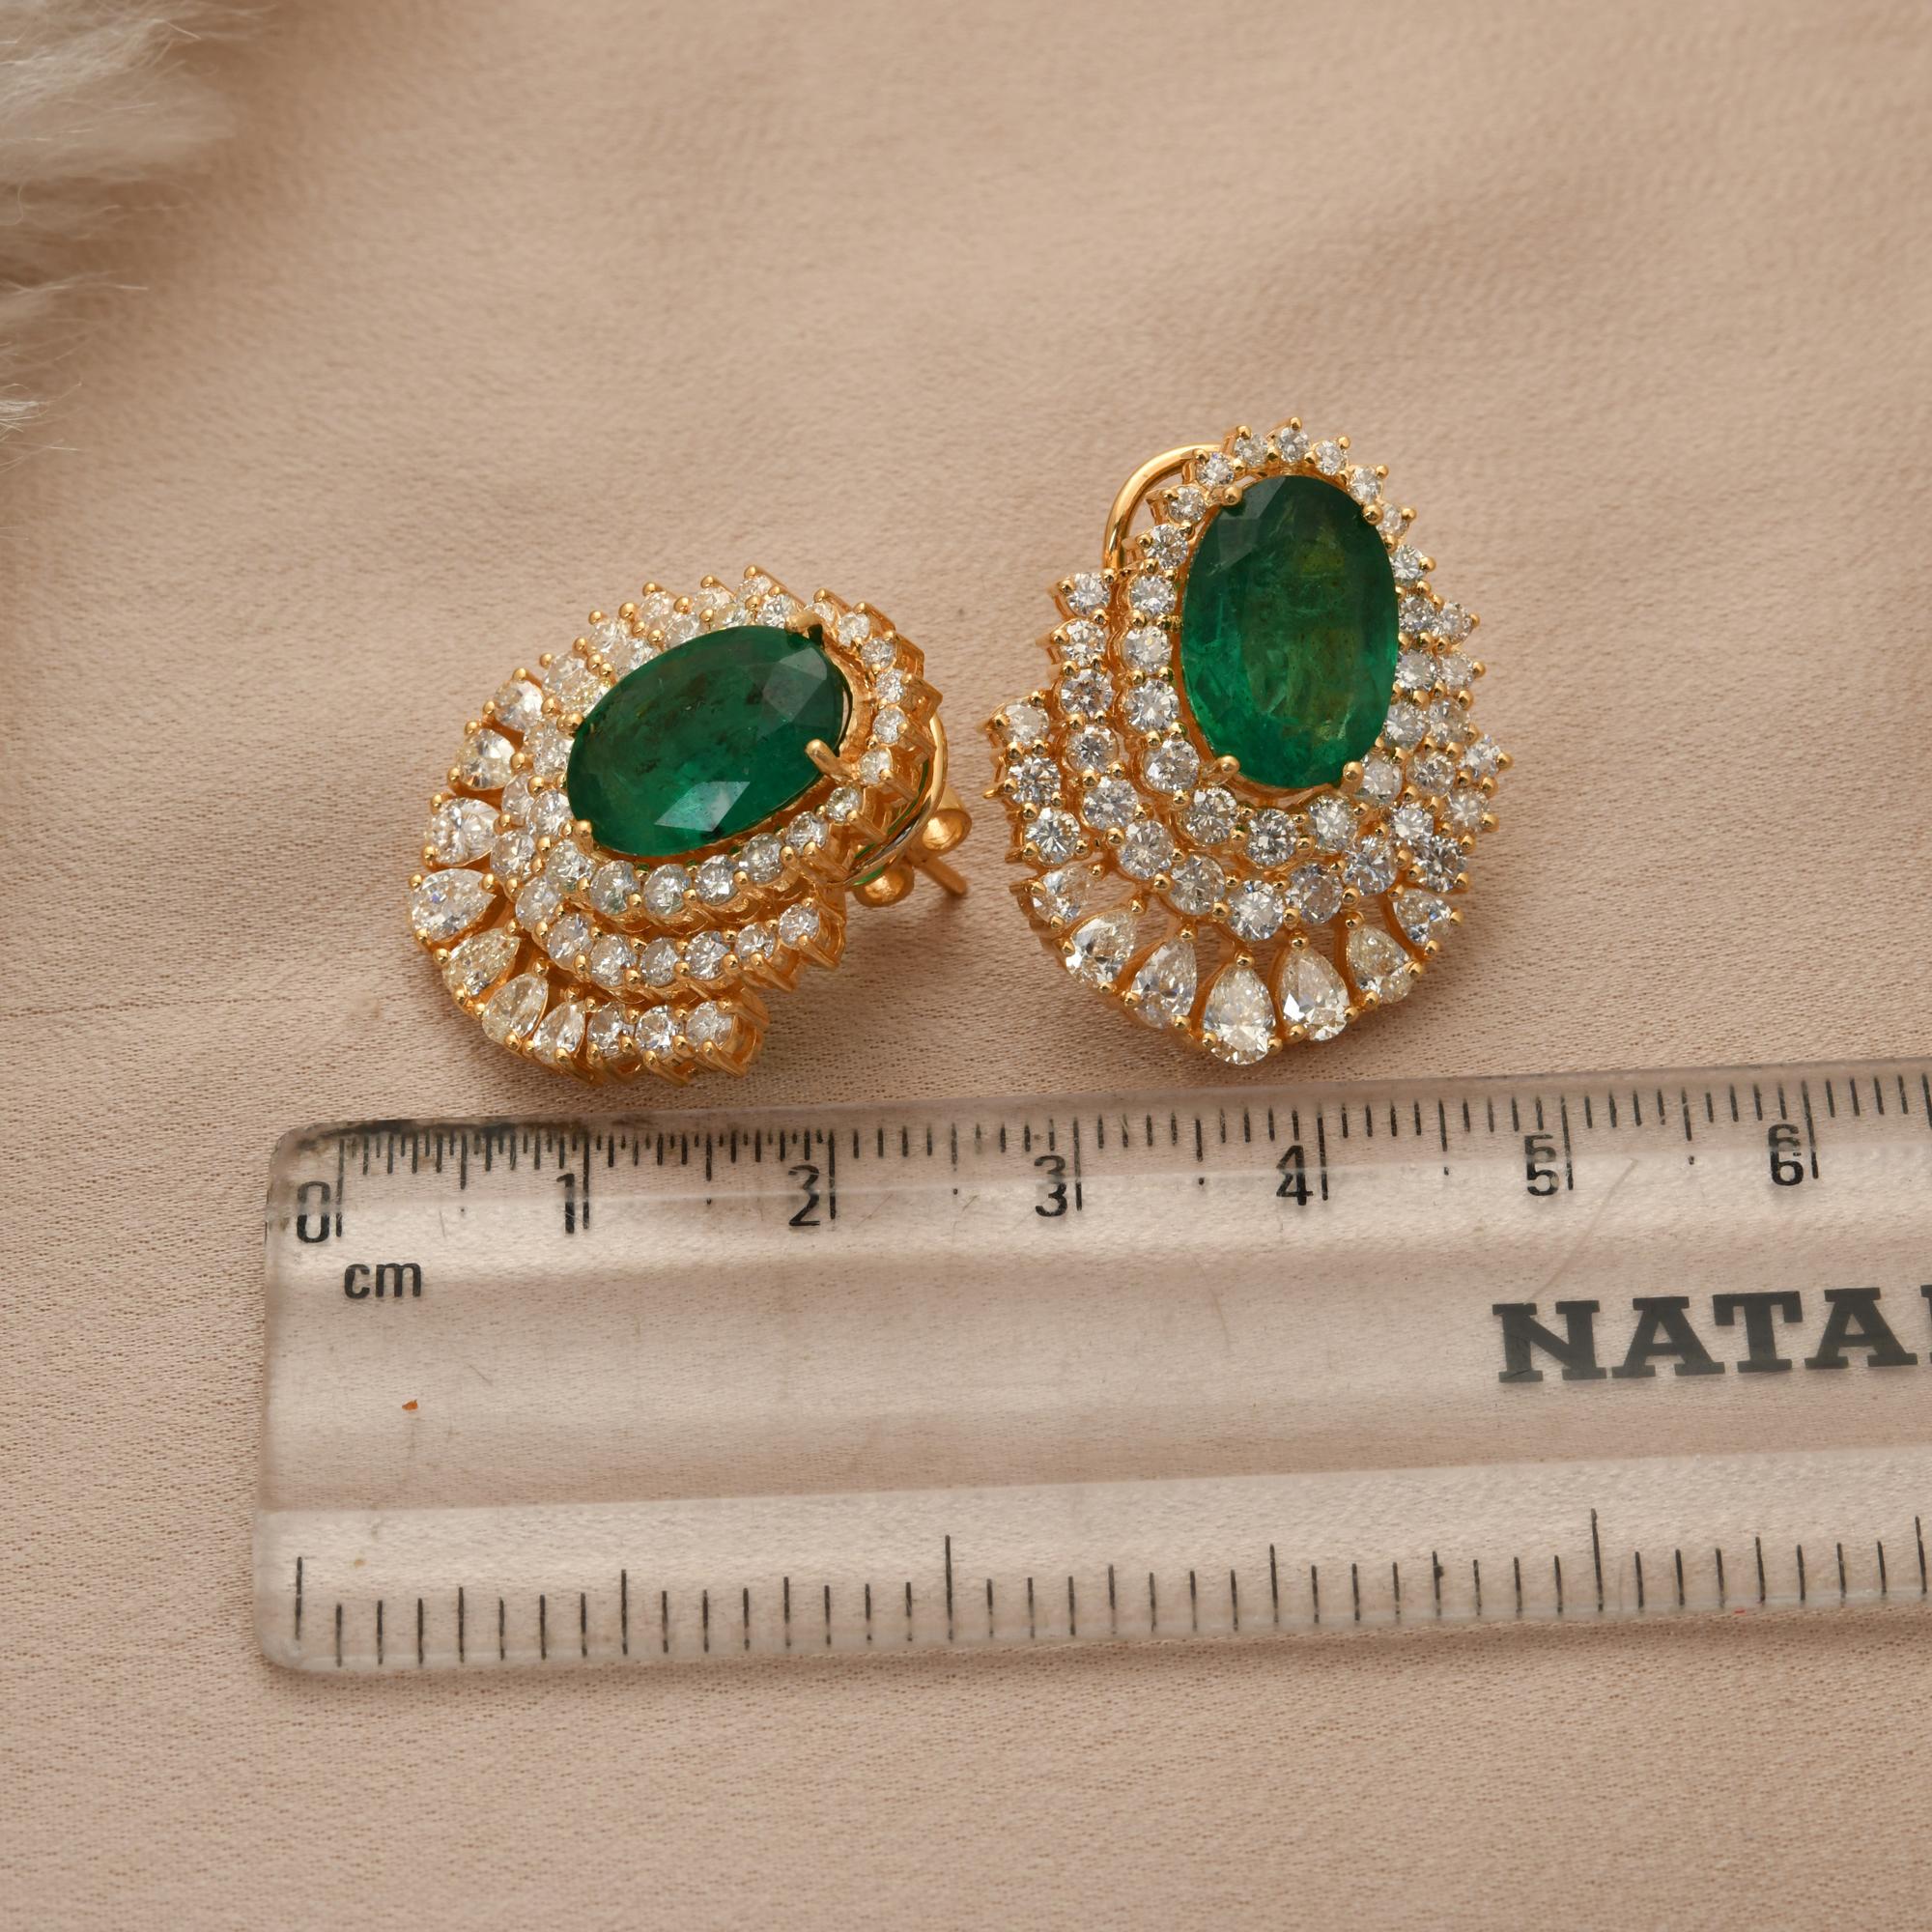 Pear Cut Oval Zambian Emerald Gemstone Earrings Pear Diamond 14k Yellow Gold Fine Jewelry For Sale